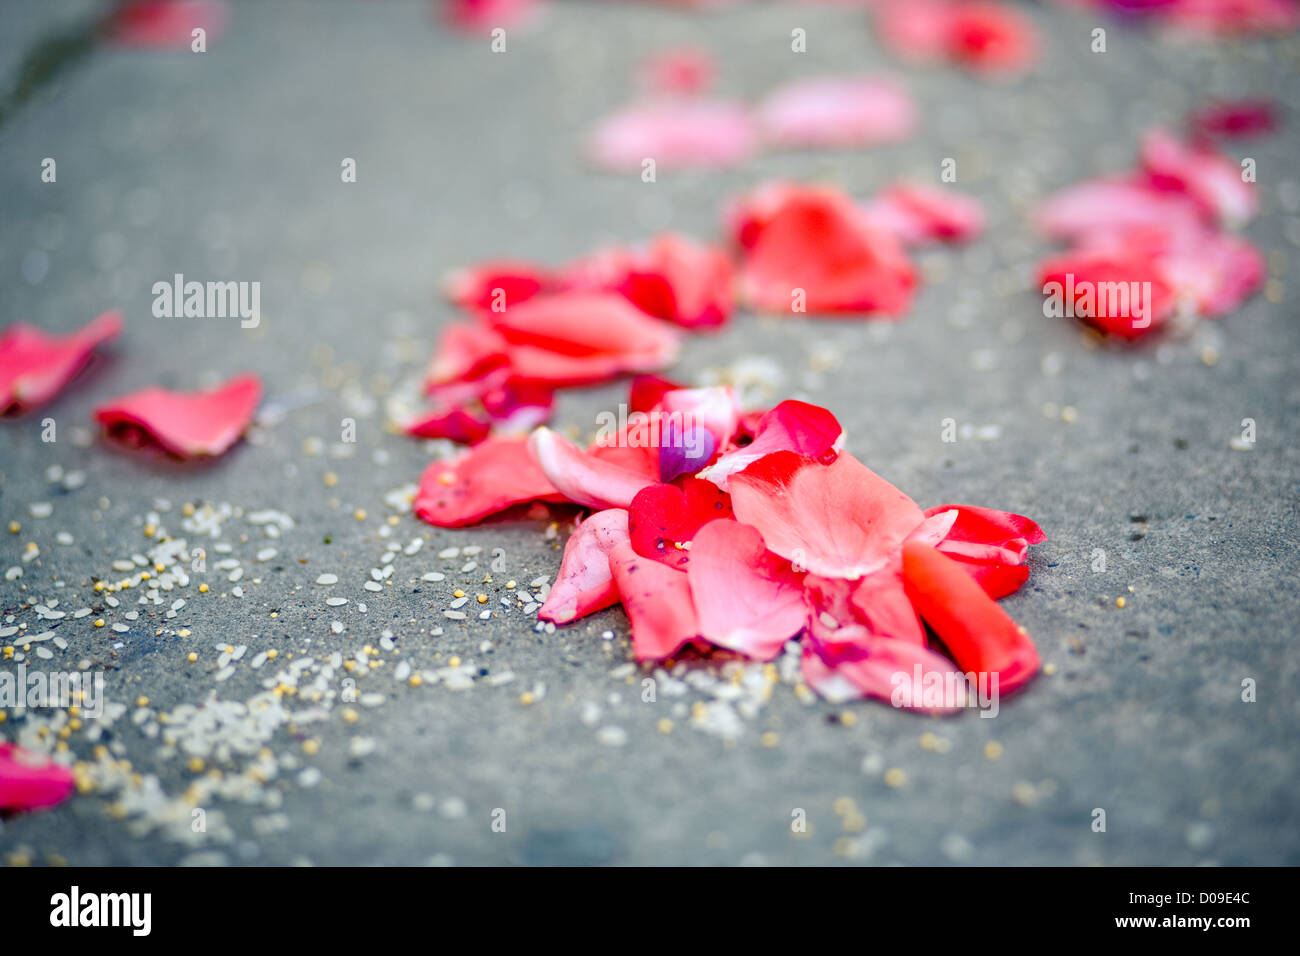 Spärlich rosa Rosenblüten auf Asphalt nach Trauung, horizontalen Bild. Stockfoto